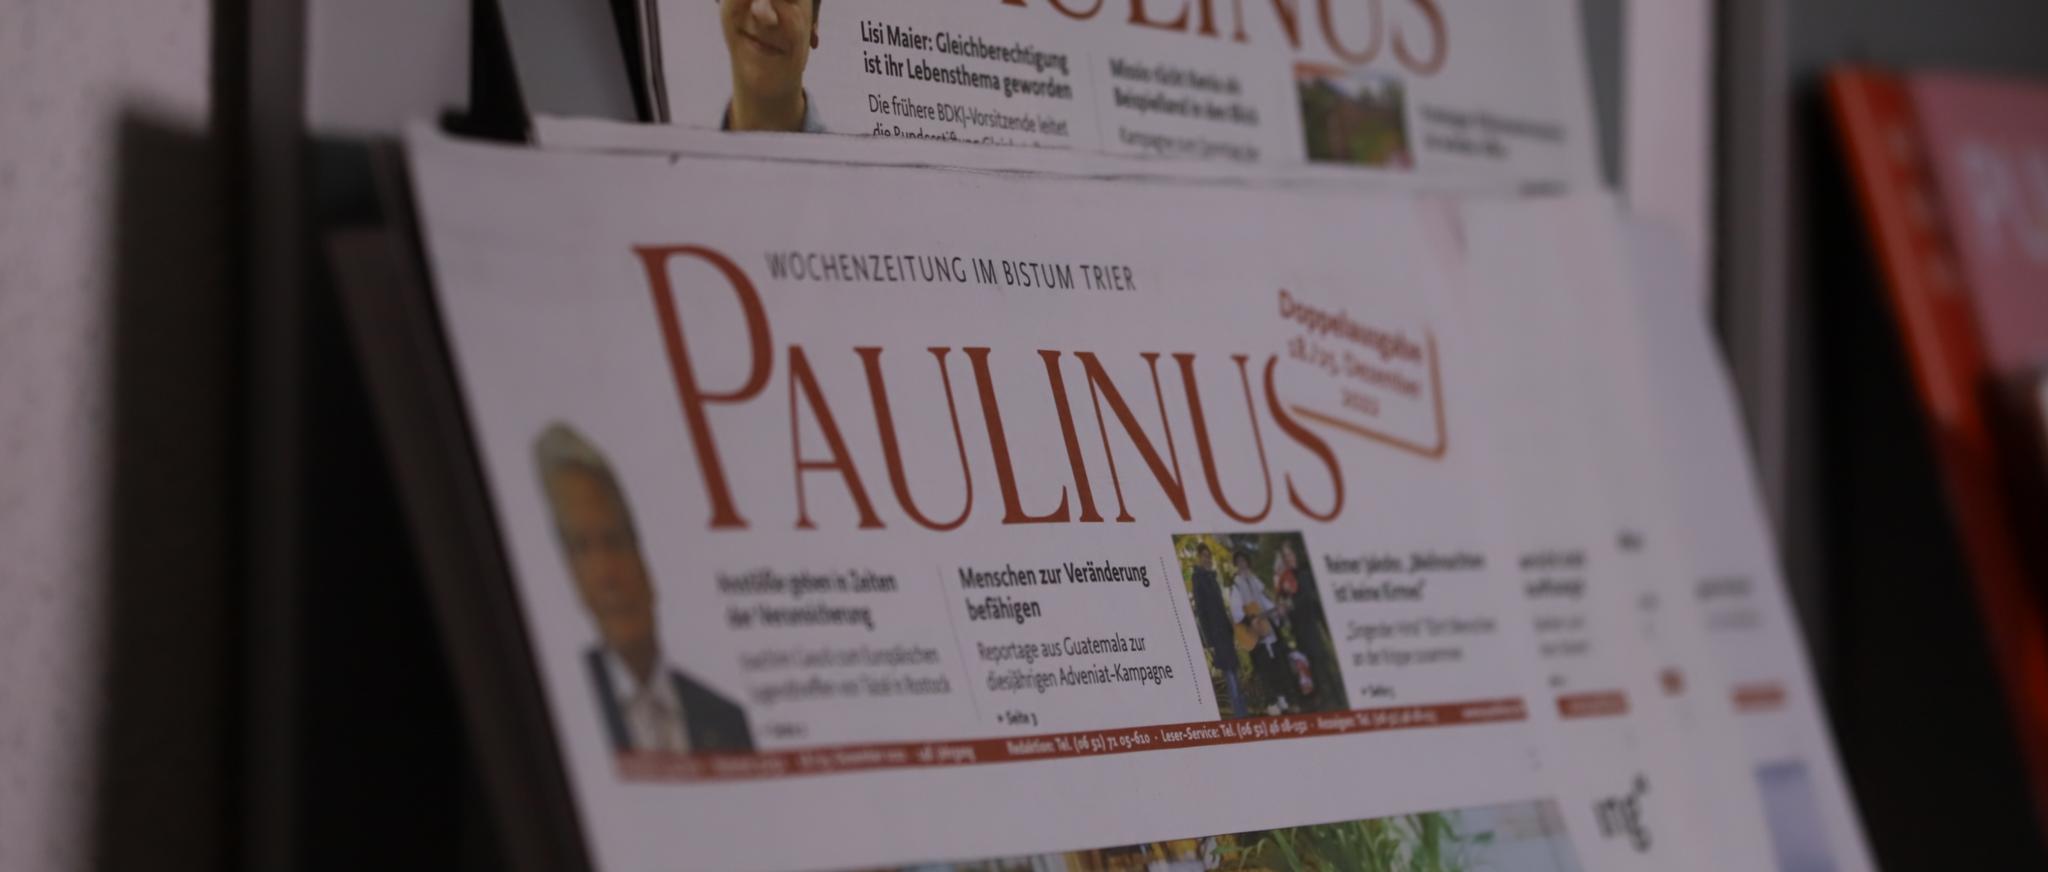 Paulinus Symbolbild